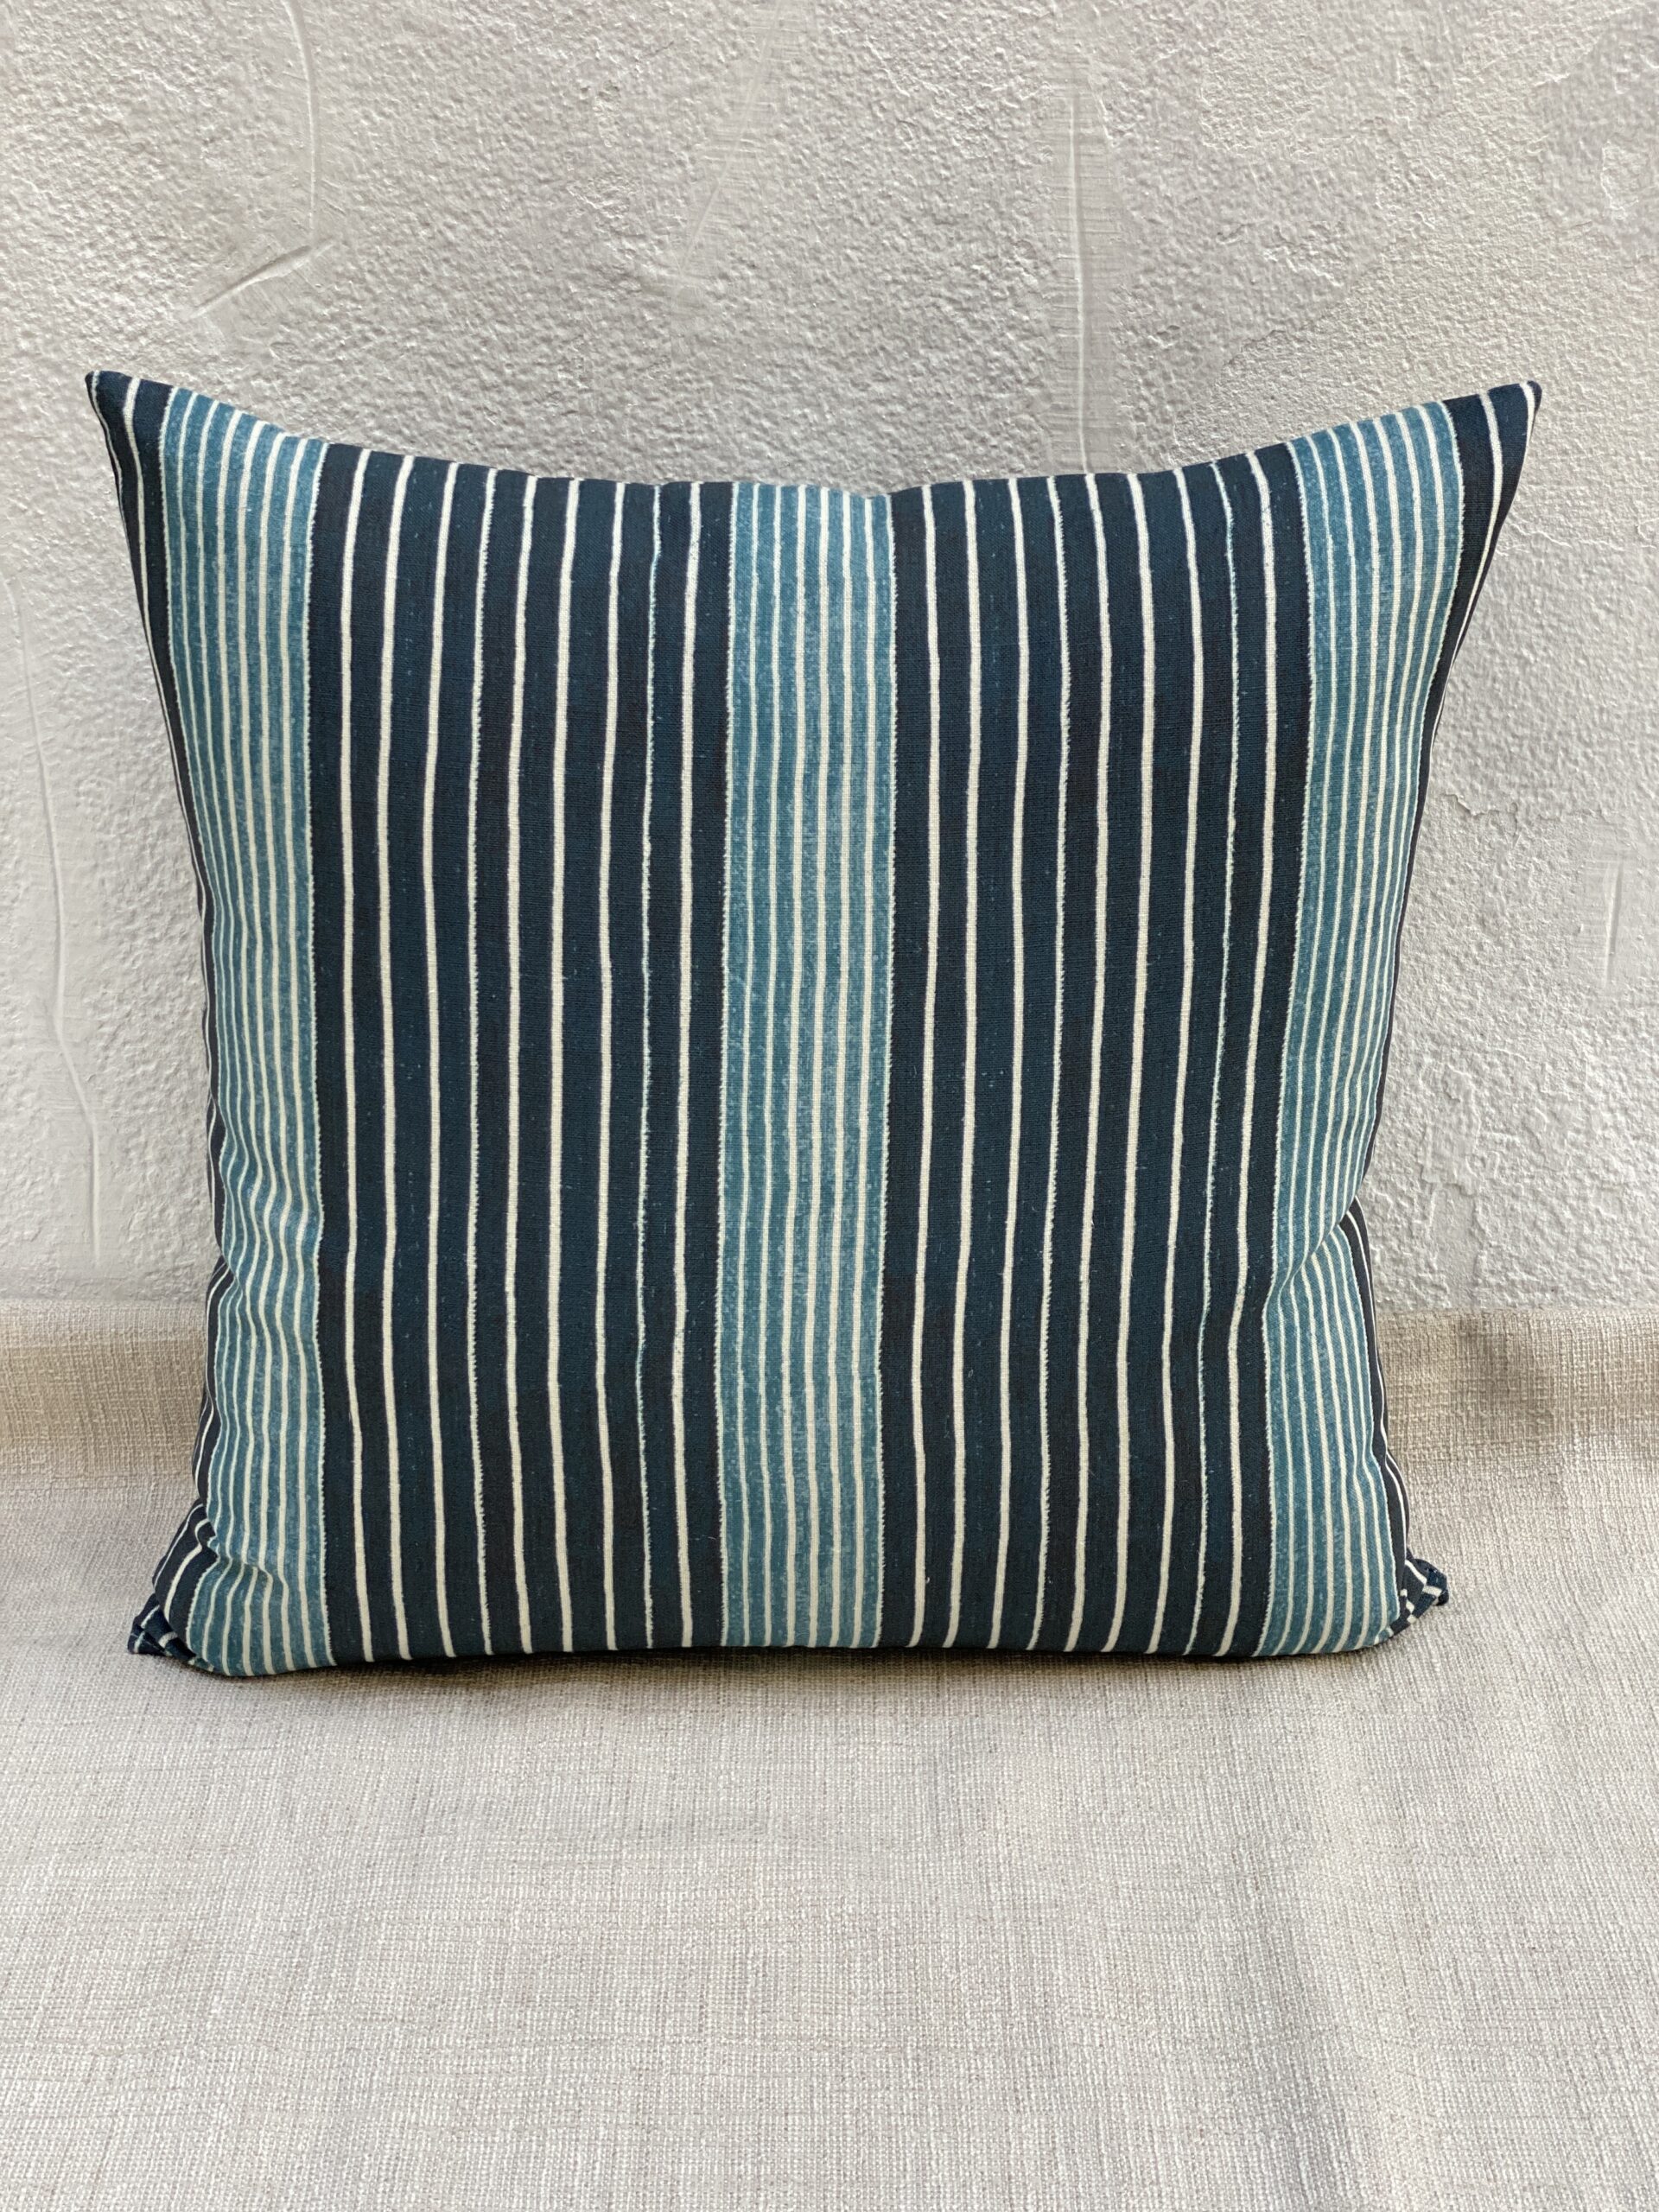 McLaurin & Piercy Mediterranean Stripe Pillows